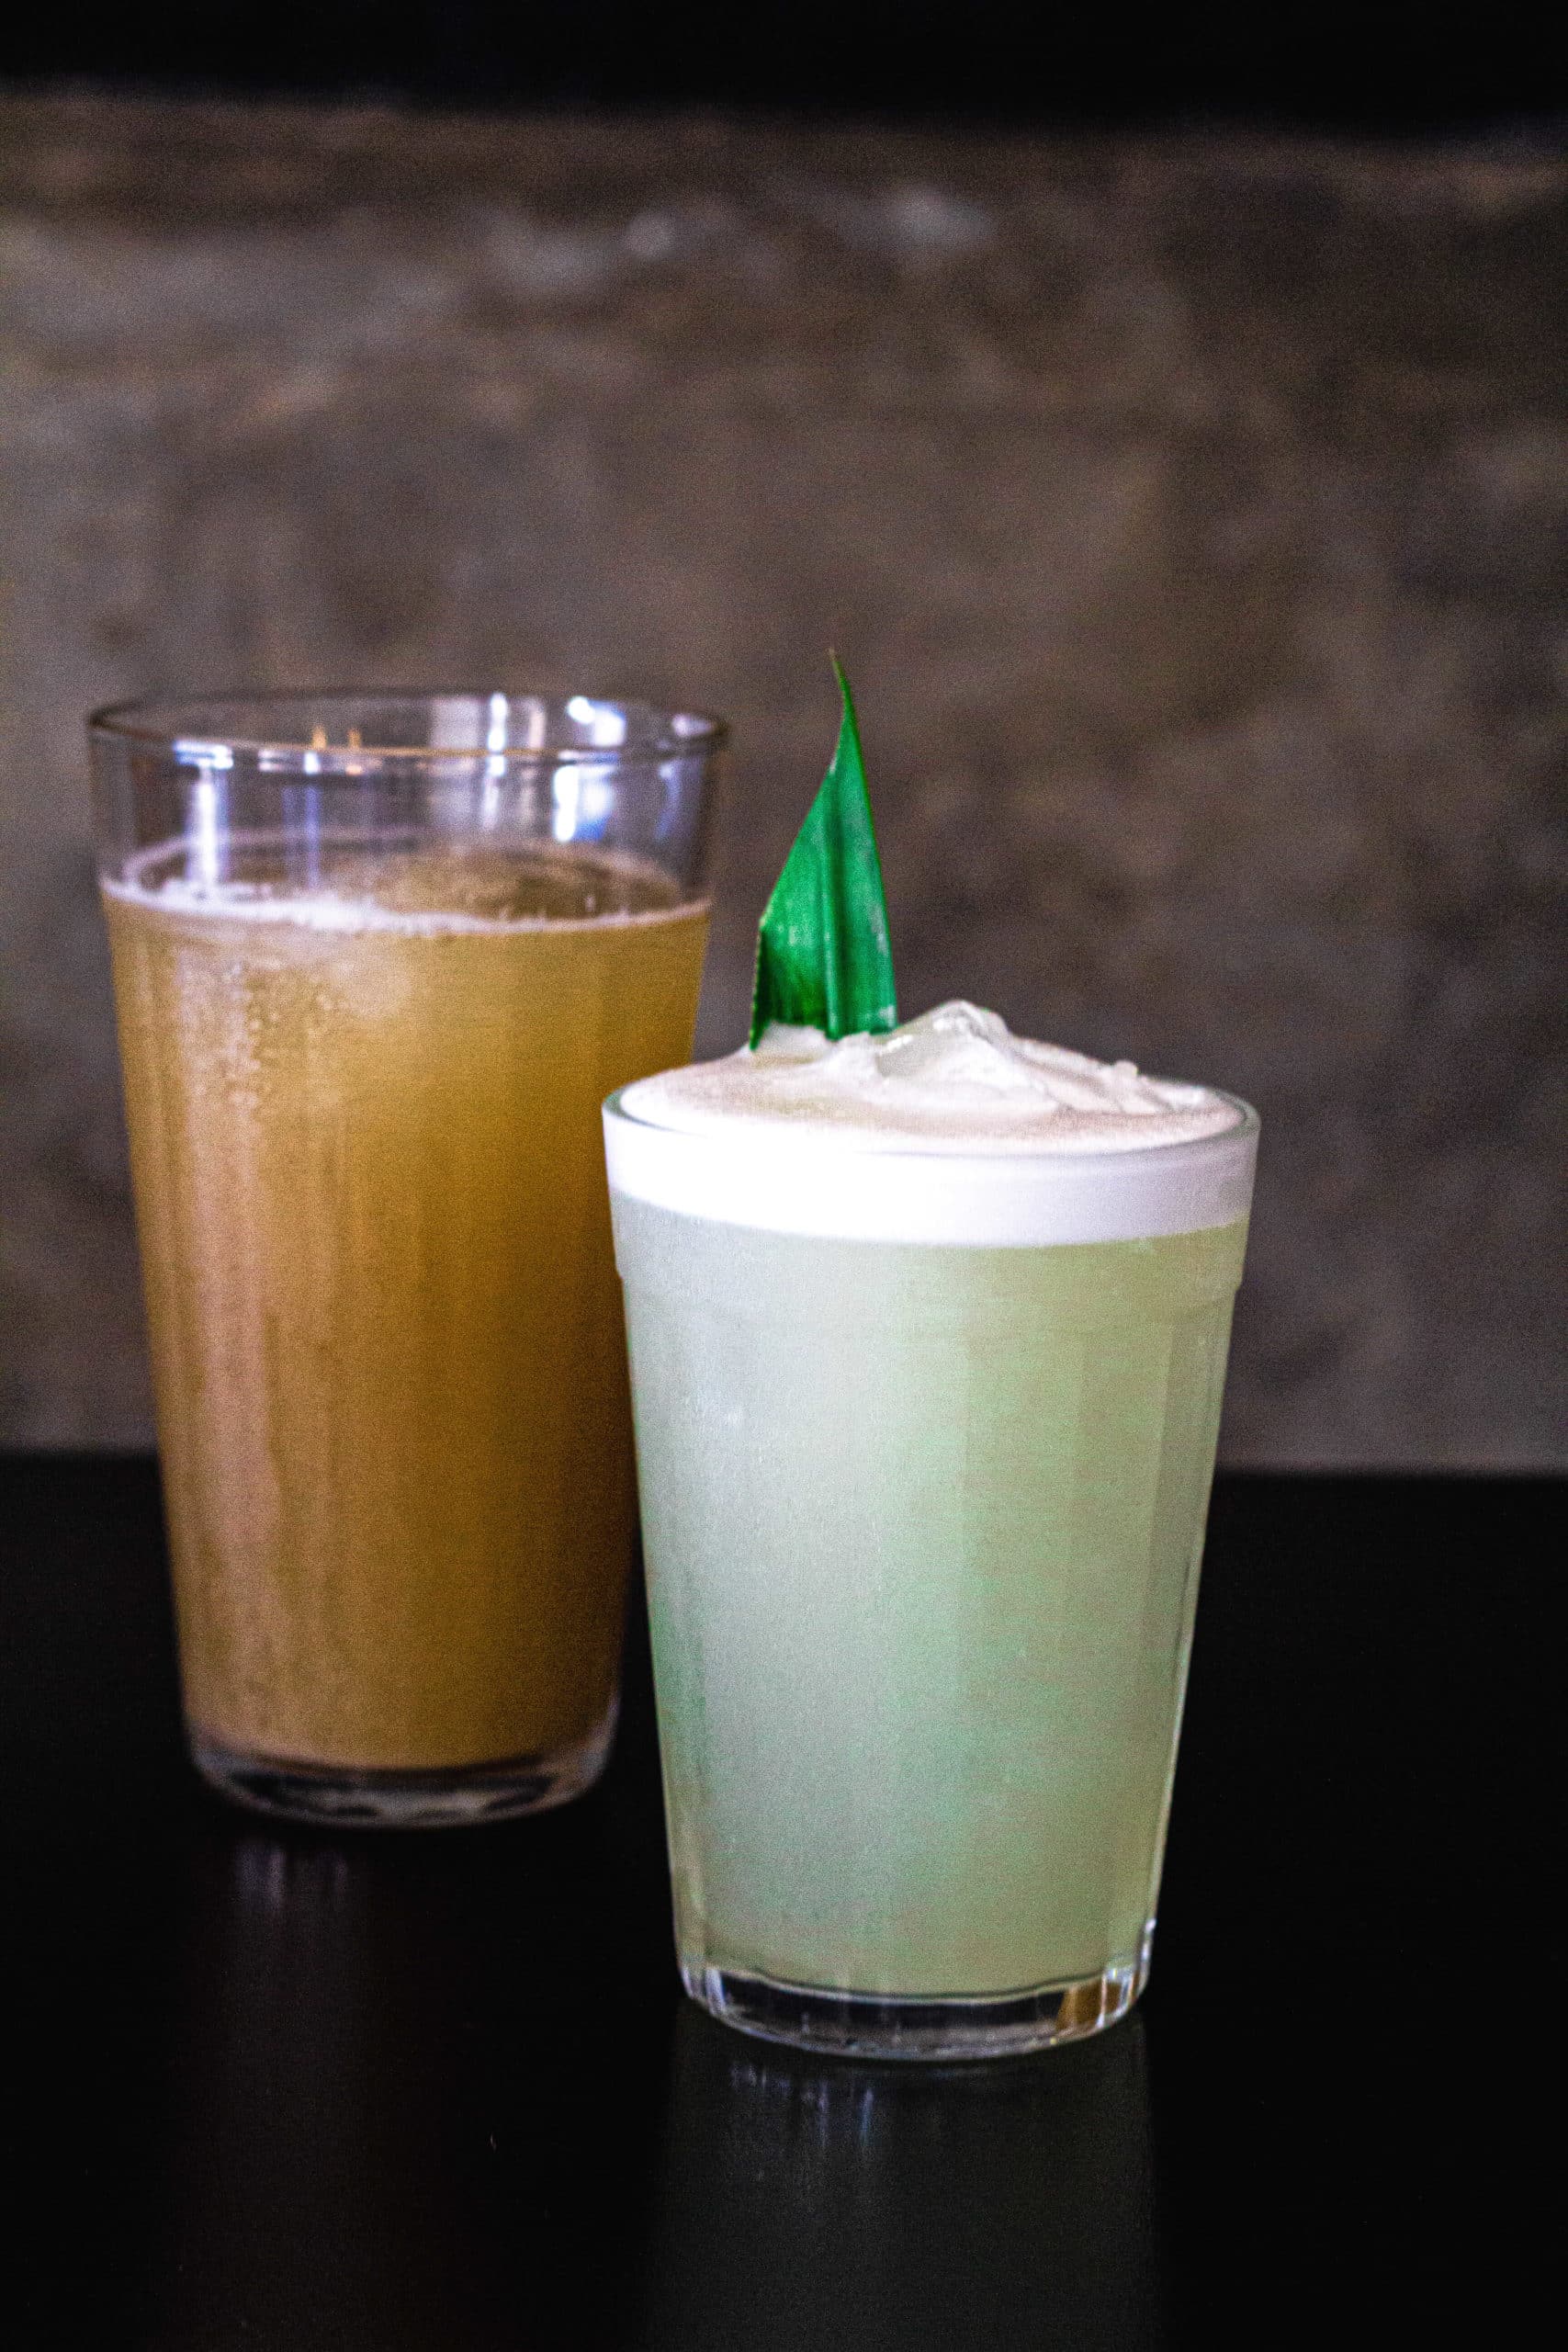 a foto mostra dois copos de drinks no Jui. Atrás um copo maior com refrigerante de gengibre de cor alaranjada. O outro copo menor é um drink de cor mais esverdeada.